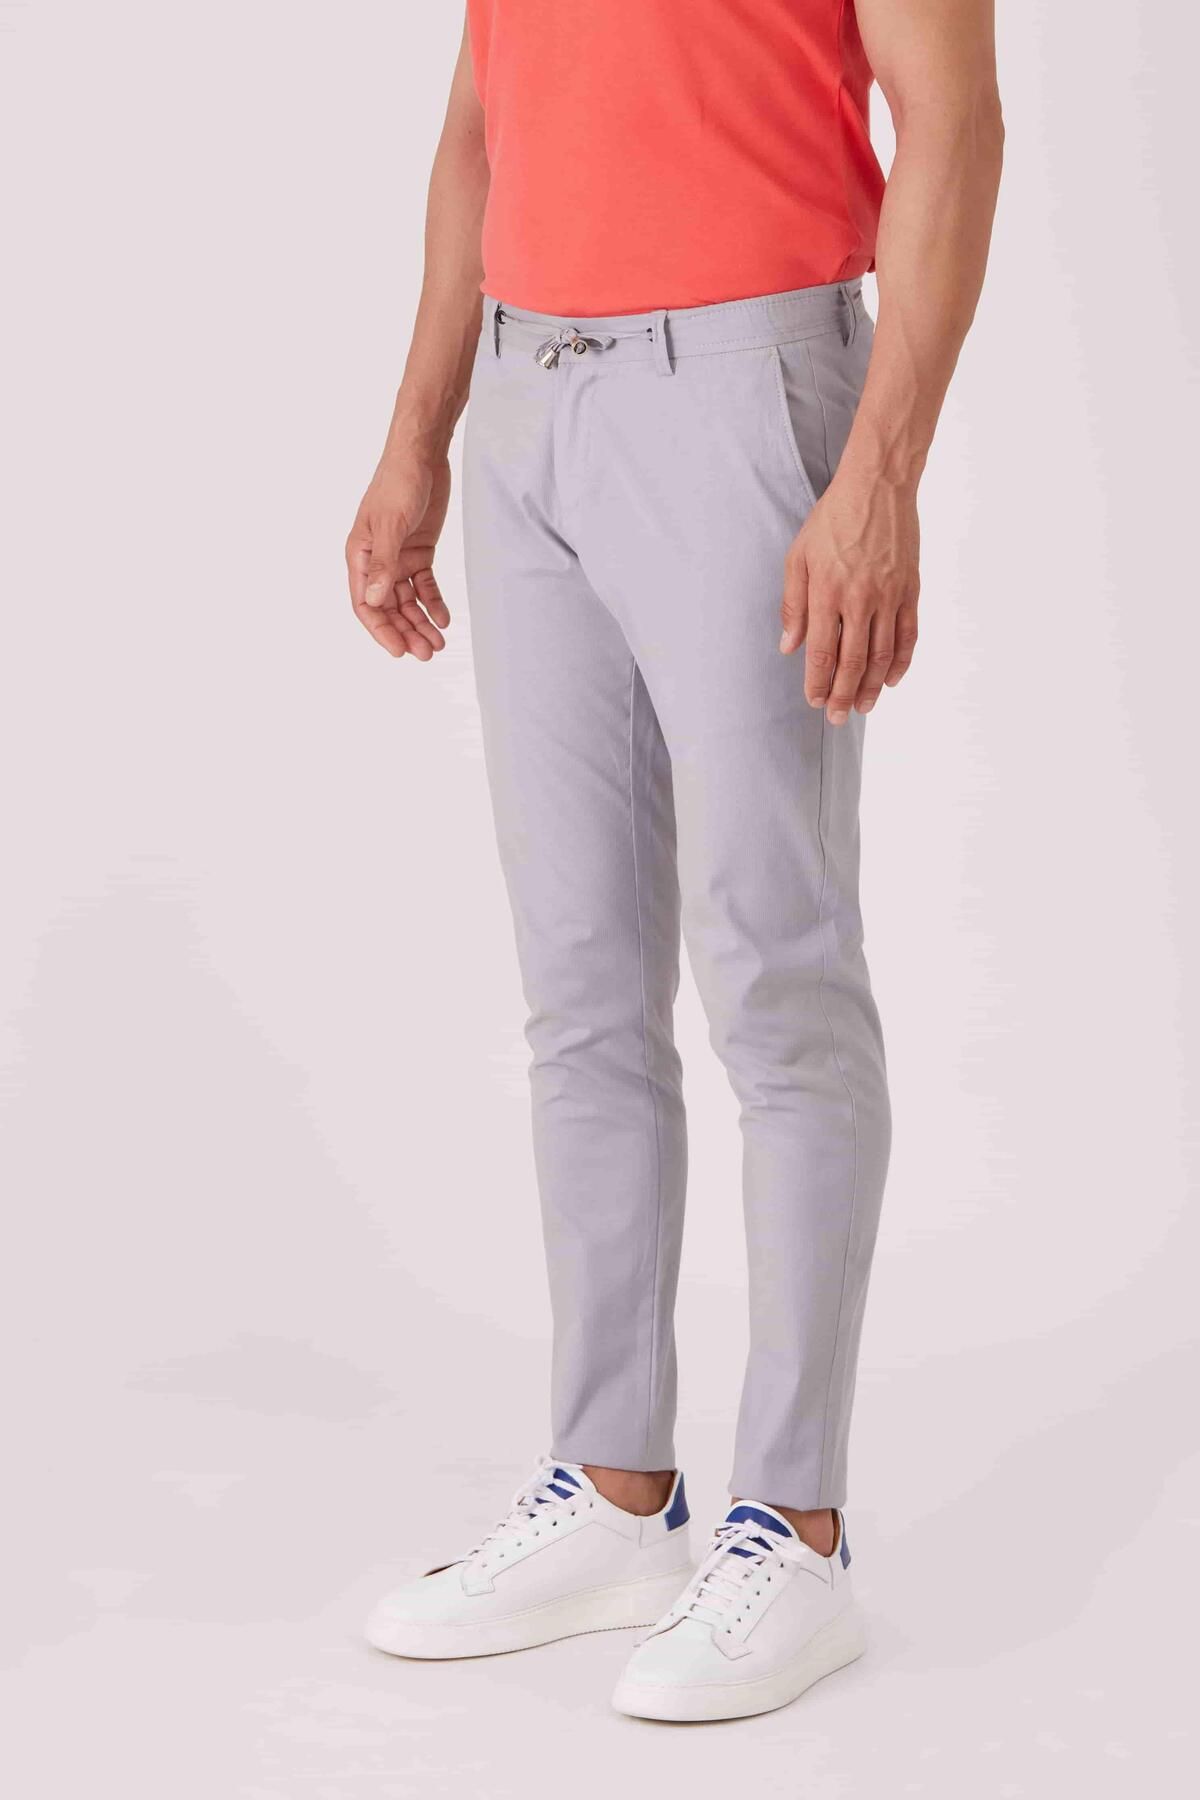 Dufy Gri Erkek Slim Fit Düz Pantolon - 87216